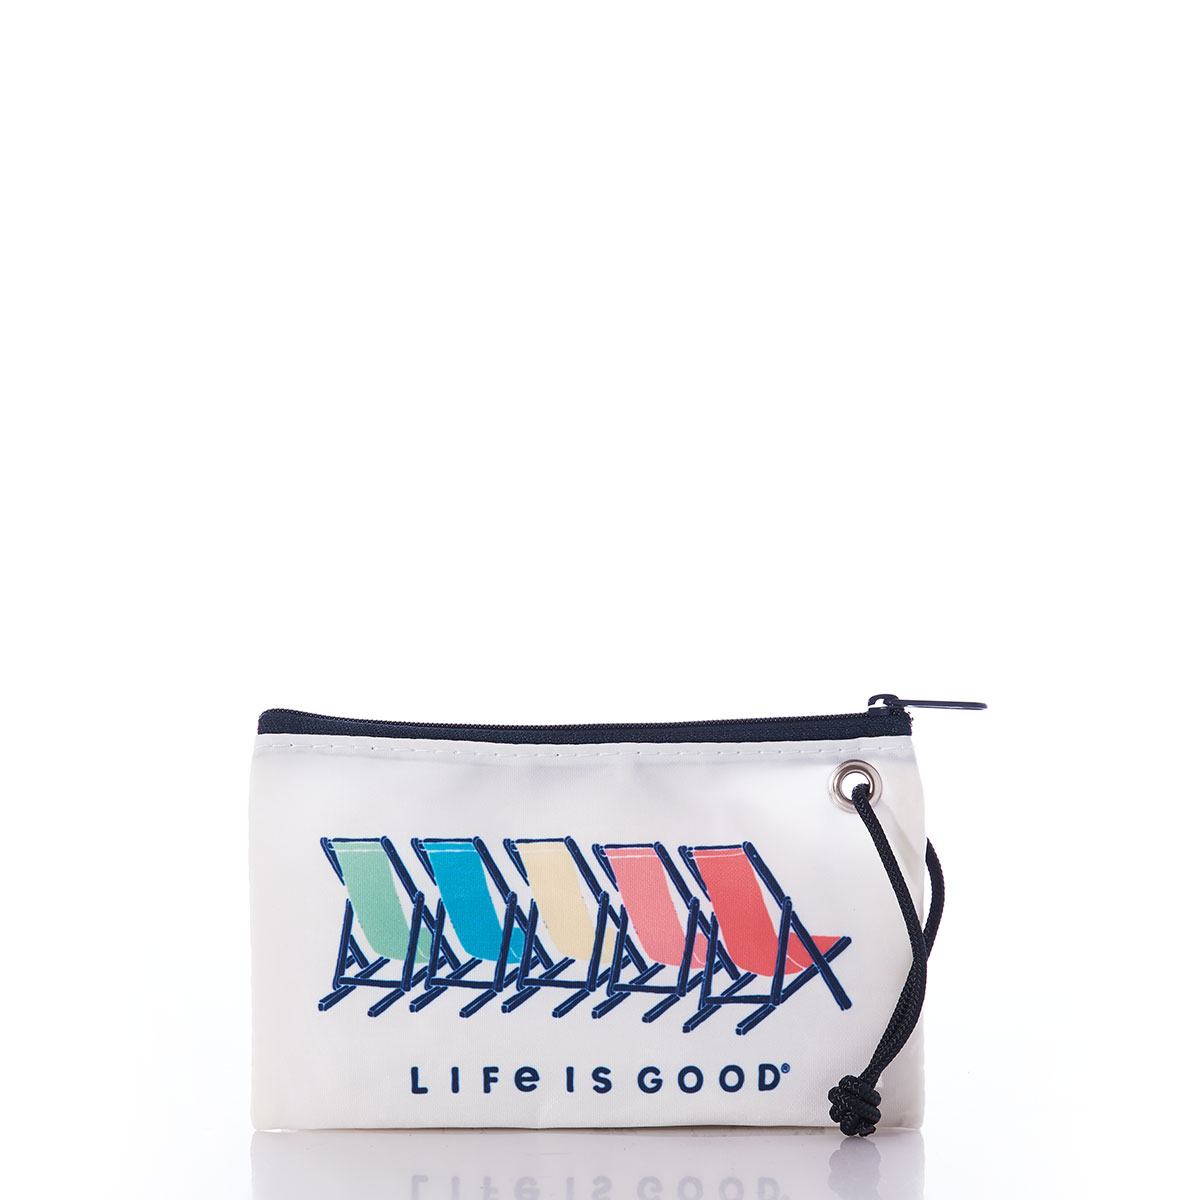 SEA BAG “LIFE IS GOOD” WRISTLET